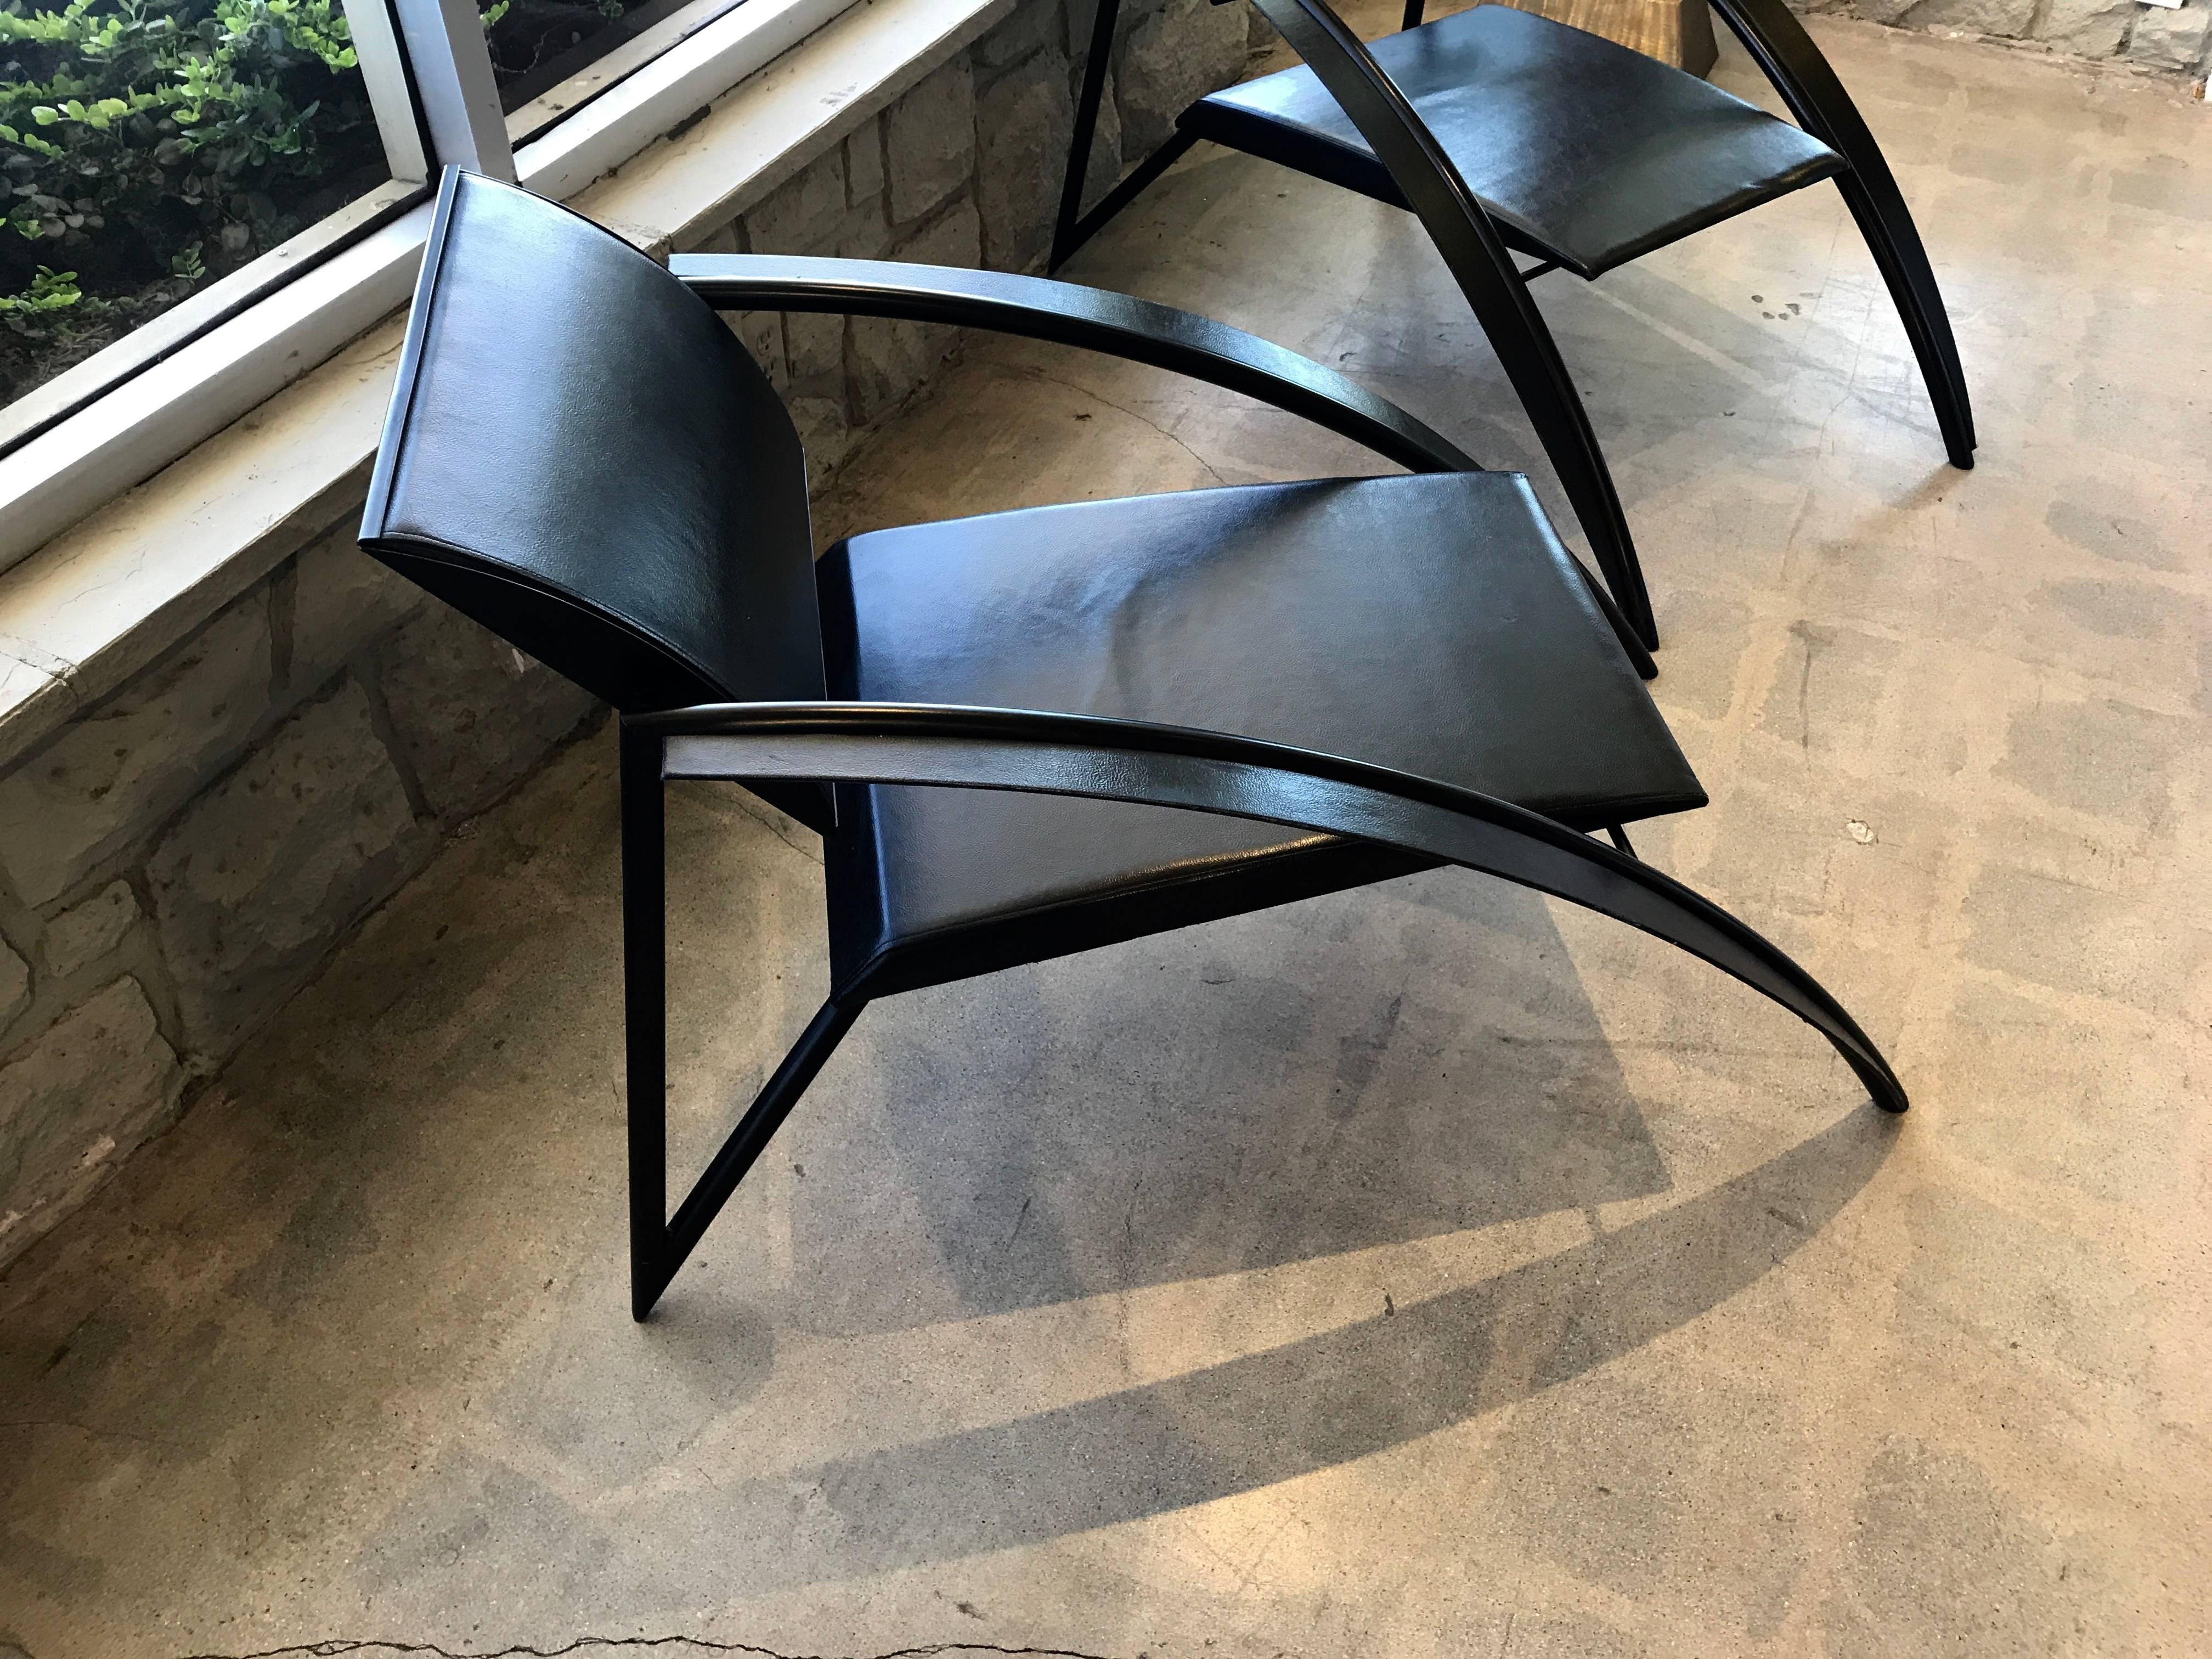 Dies ist ein Paar der seltenen atemberaubenden Vintage-Sessel von dem französischen Architekten Jean Louis Godivier entworfen. Sie wurden in den 1980er Jahren entworfen und eine Version dieses Stuhls wurde 1986 auf einer Ausstellung für moderne